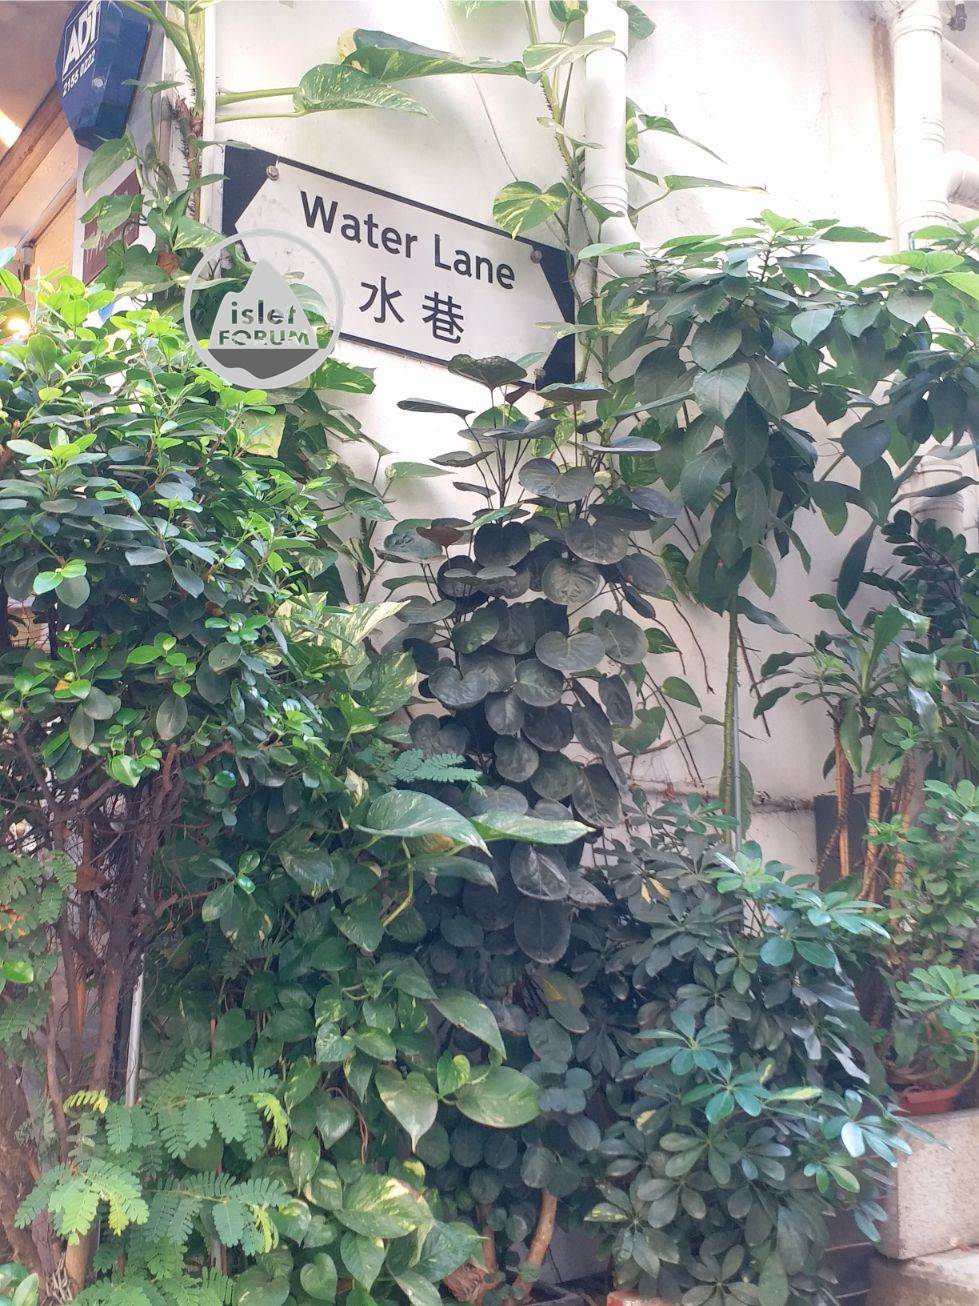 上環水巷 Water Lane (4).jpg